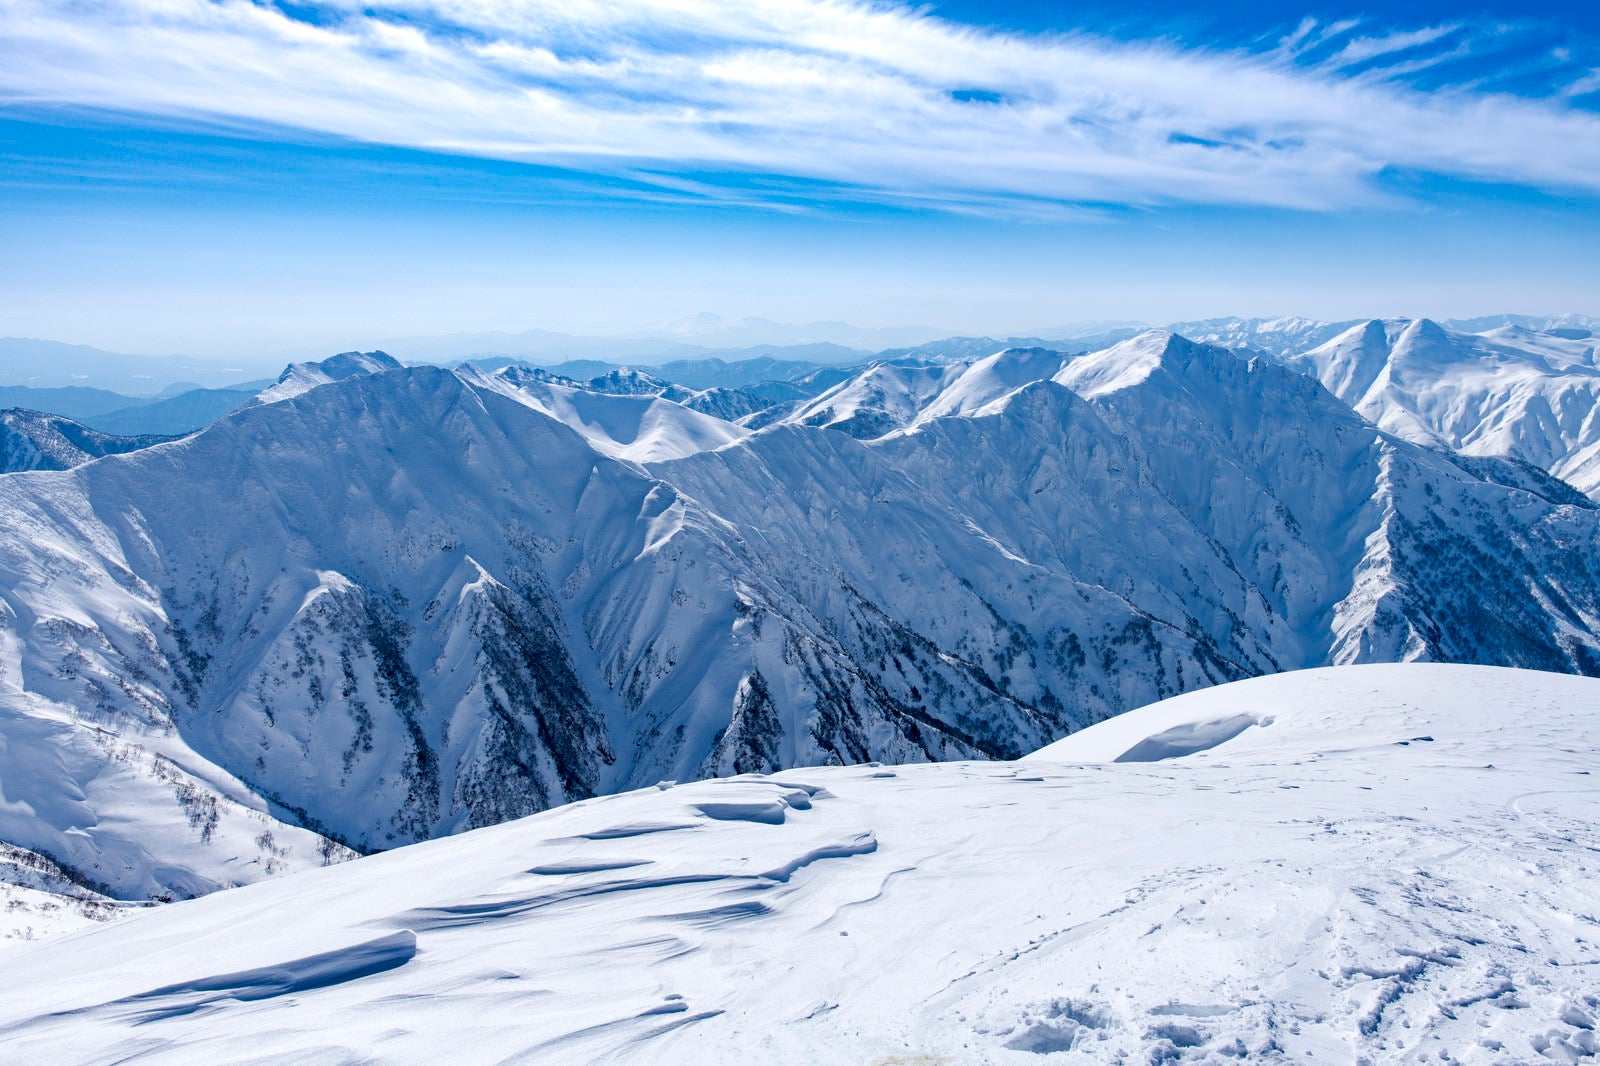 「雪の殿堂谷川岳主脈の景色」の写真